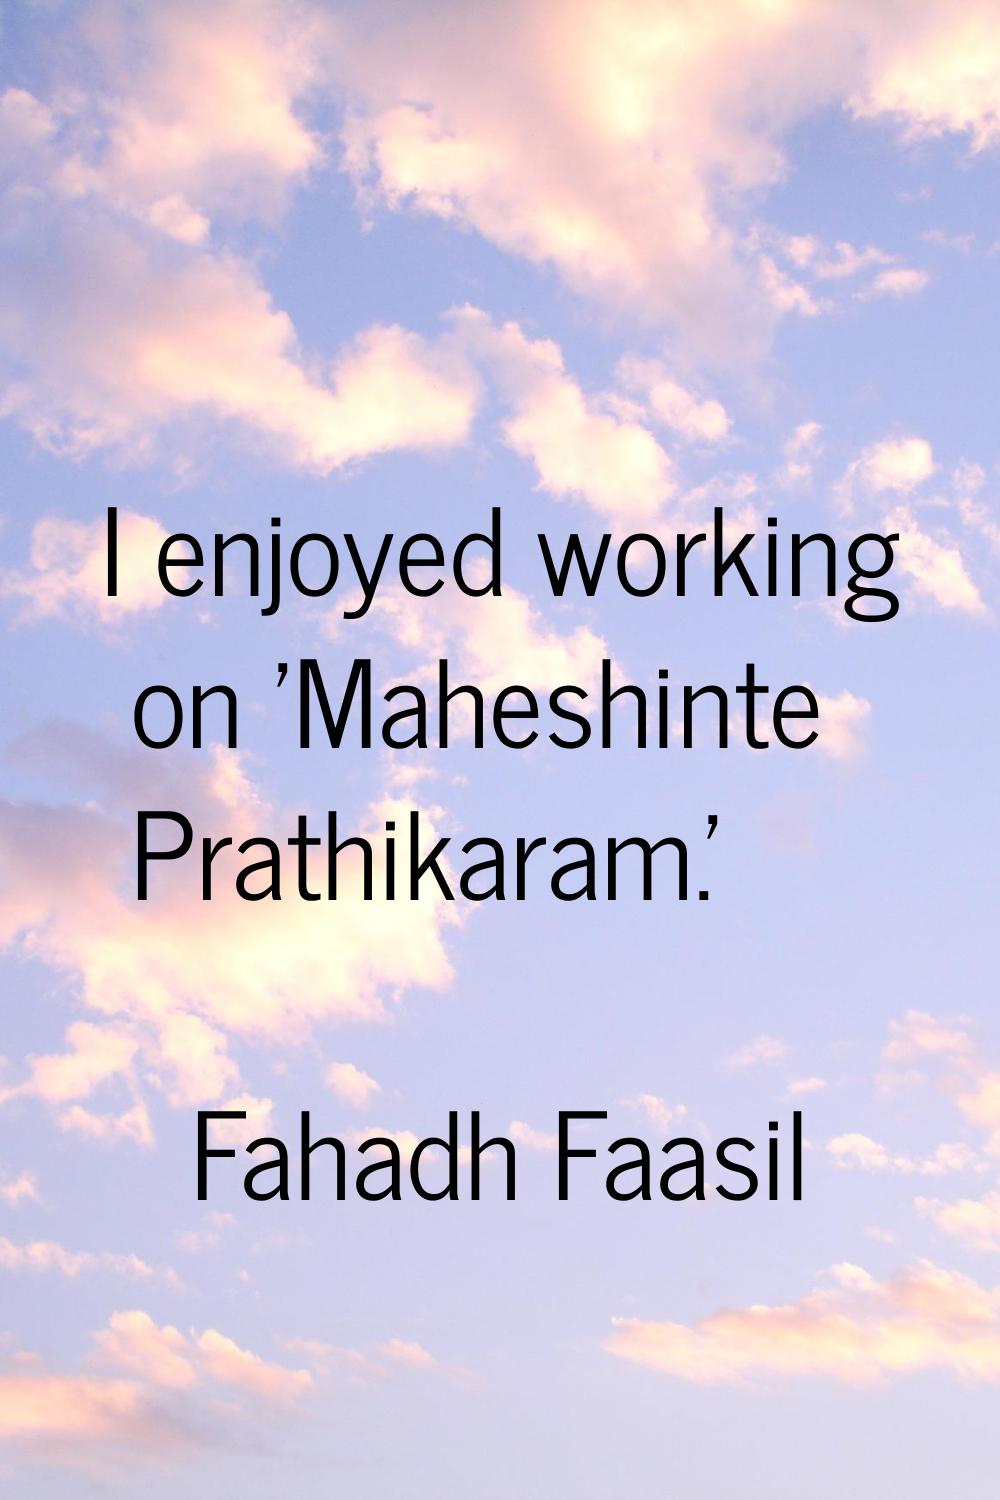 I enjoyed working on 'Maheshinte Prathikaram.'